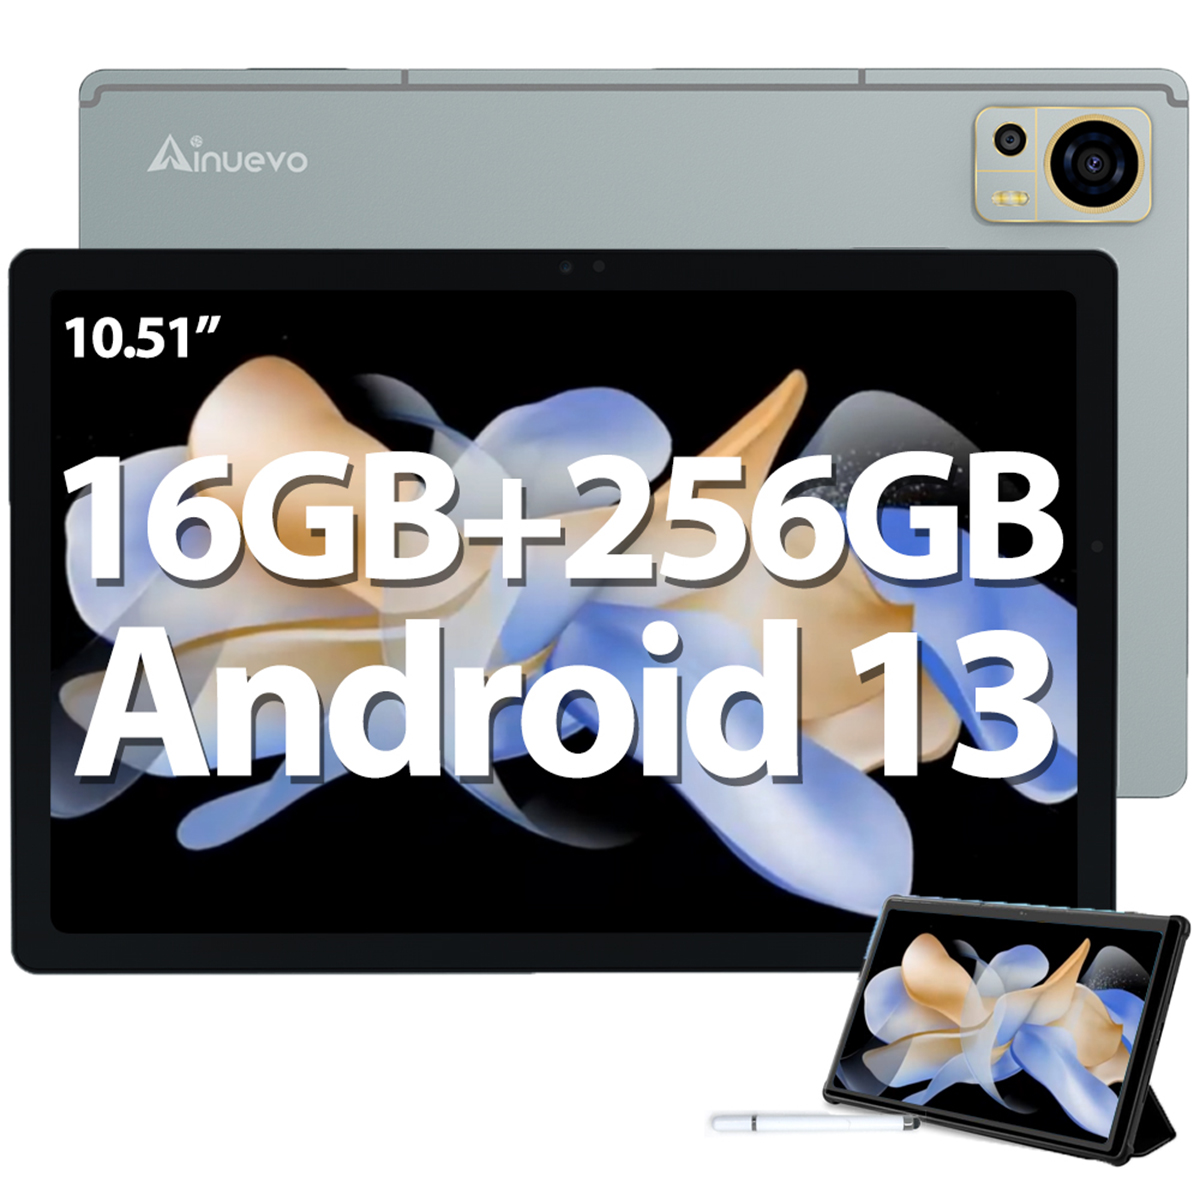 GB, Grau 256 Android 16GB+256GB AINUEVO 13, 8050mAh 10,51 S9 Tab Tablet, Zoll,